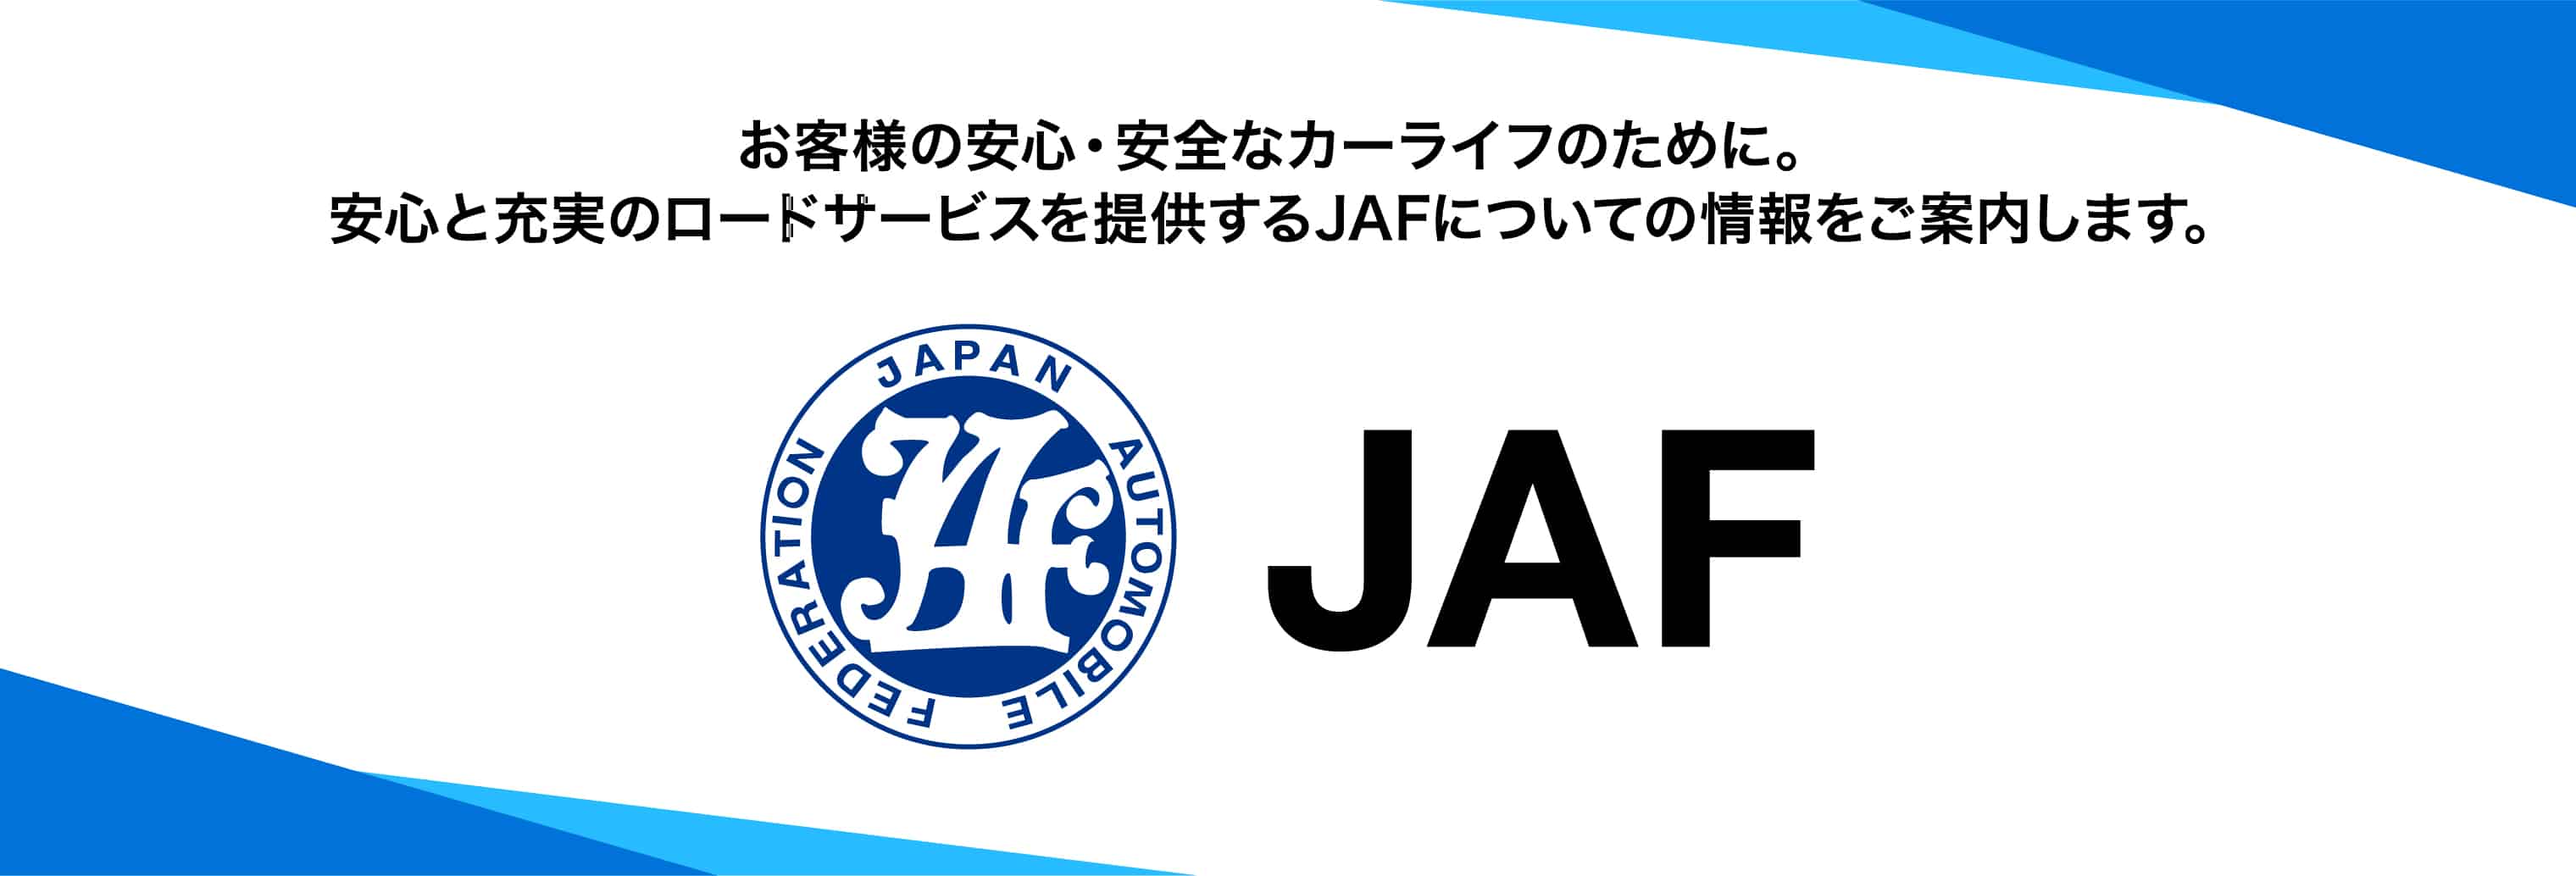 お客様の安心・安全なカーライフのために。安心と充実のロードサービスを提供するJAFについての情報をご案内します。JAF